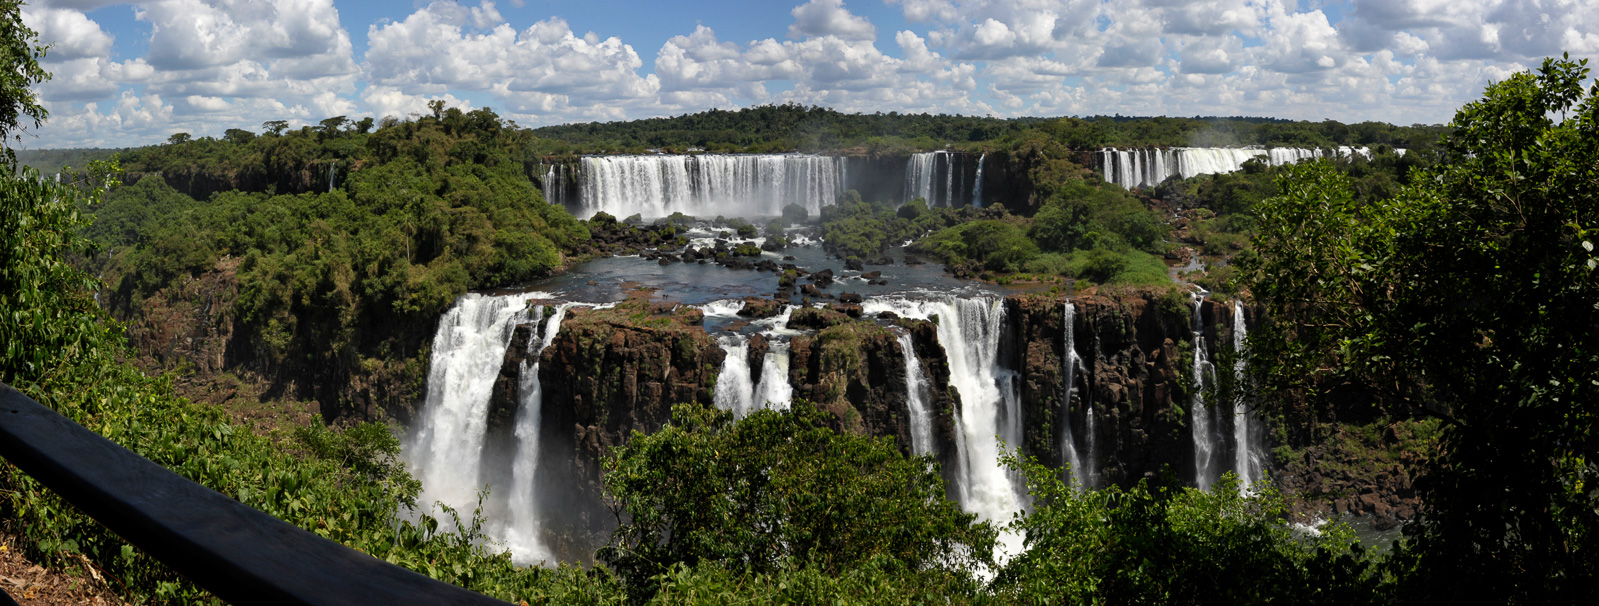 Cataratas del Iguazu [28 mm, 1/320 sec at f / 14, ISO 400]